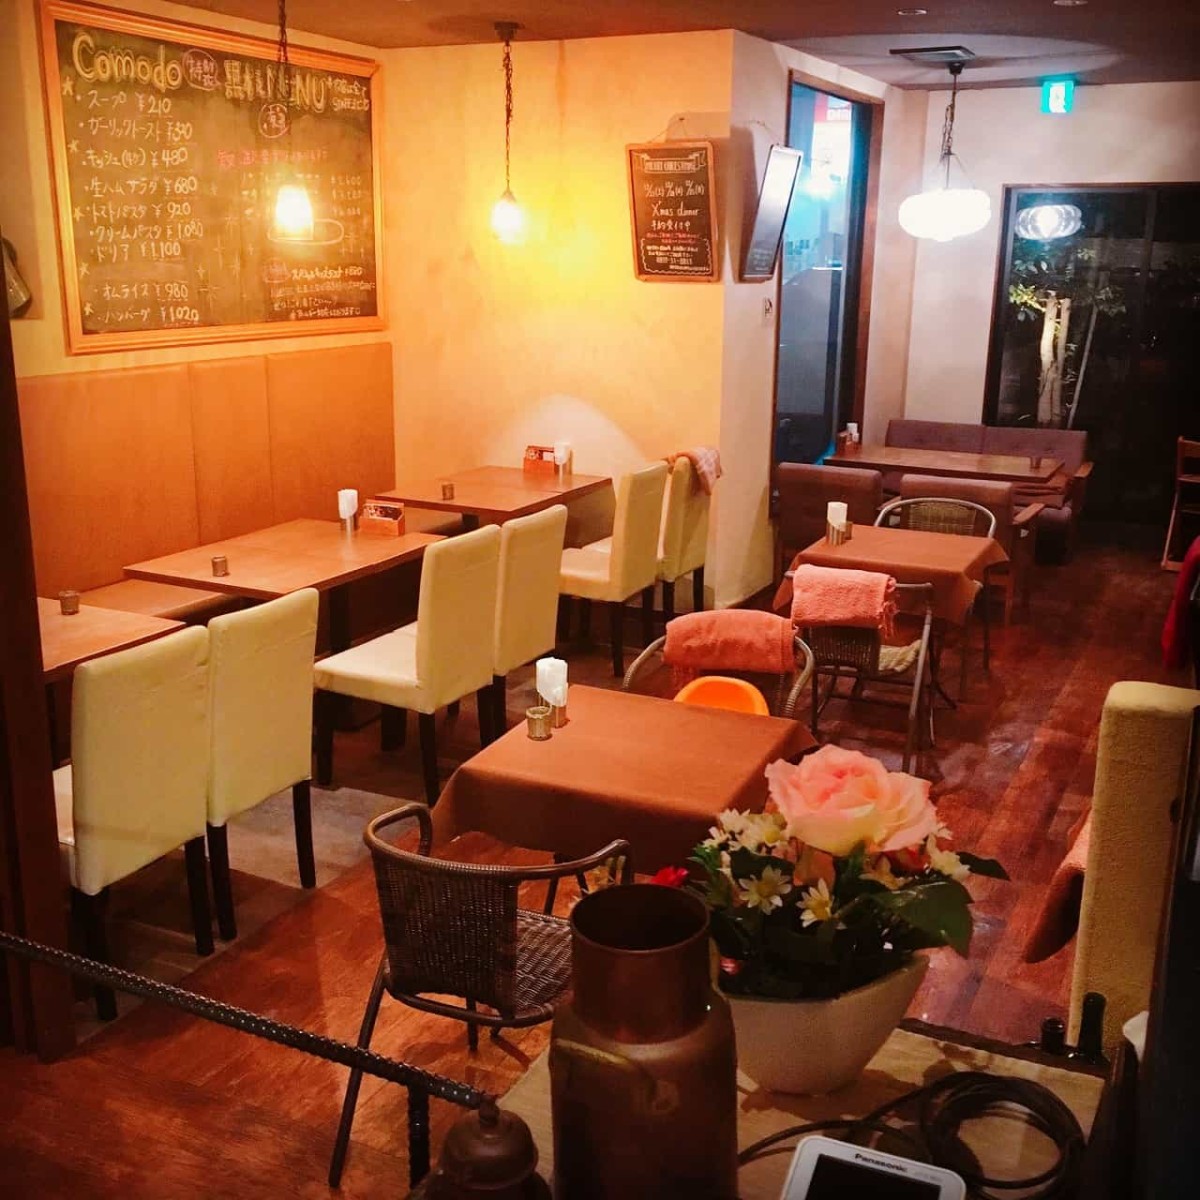 鳥取県米子市にある『CafeRestaurantCOMODO』の店内